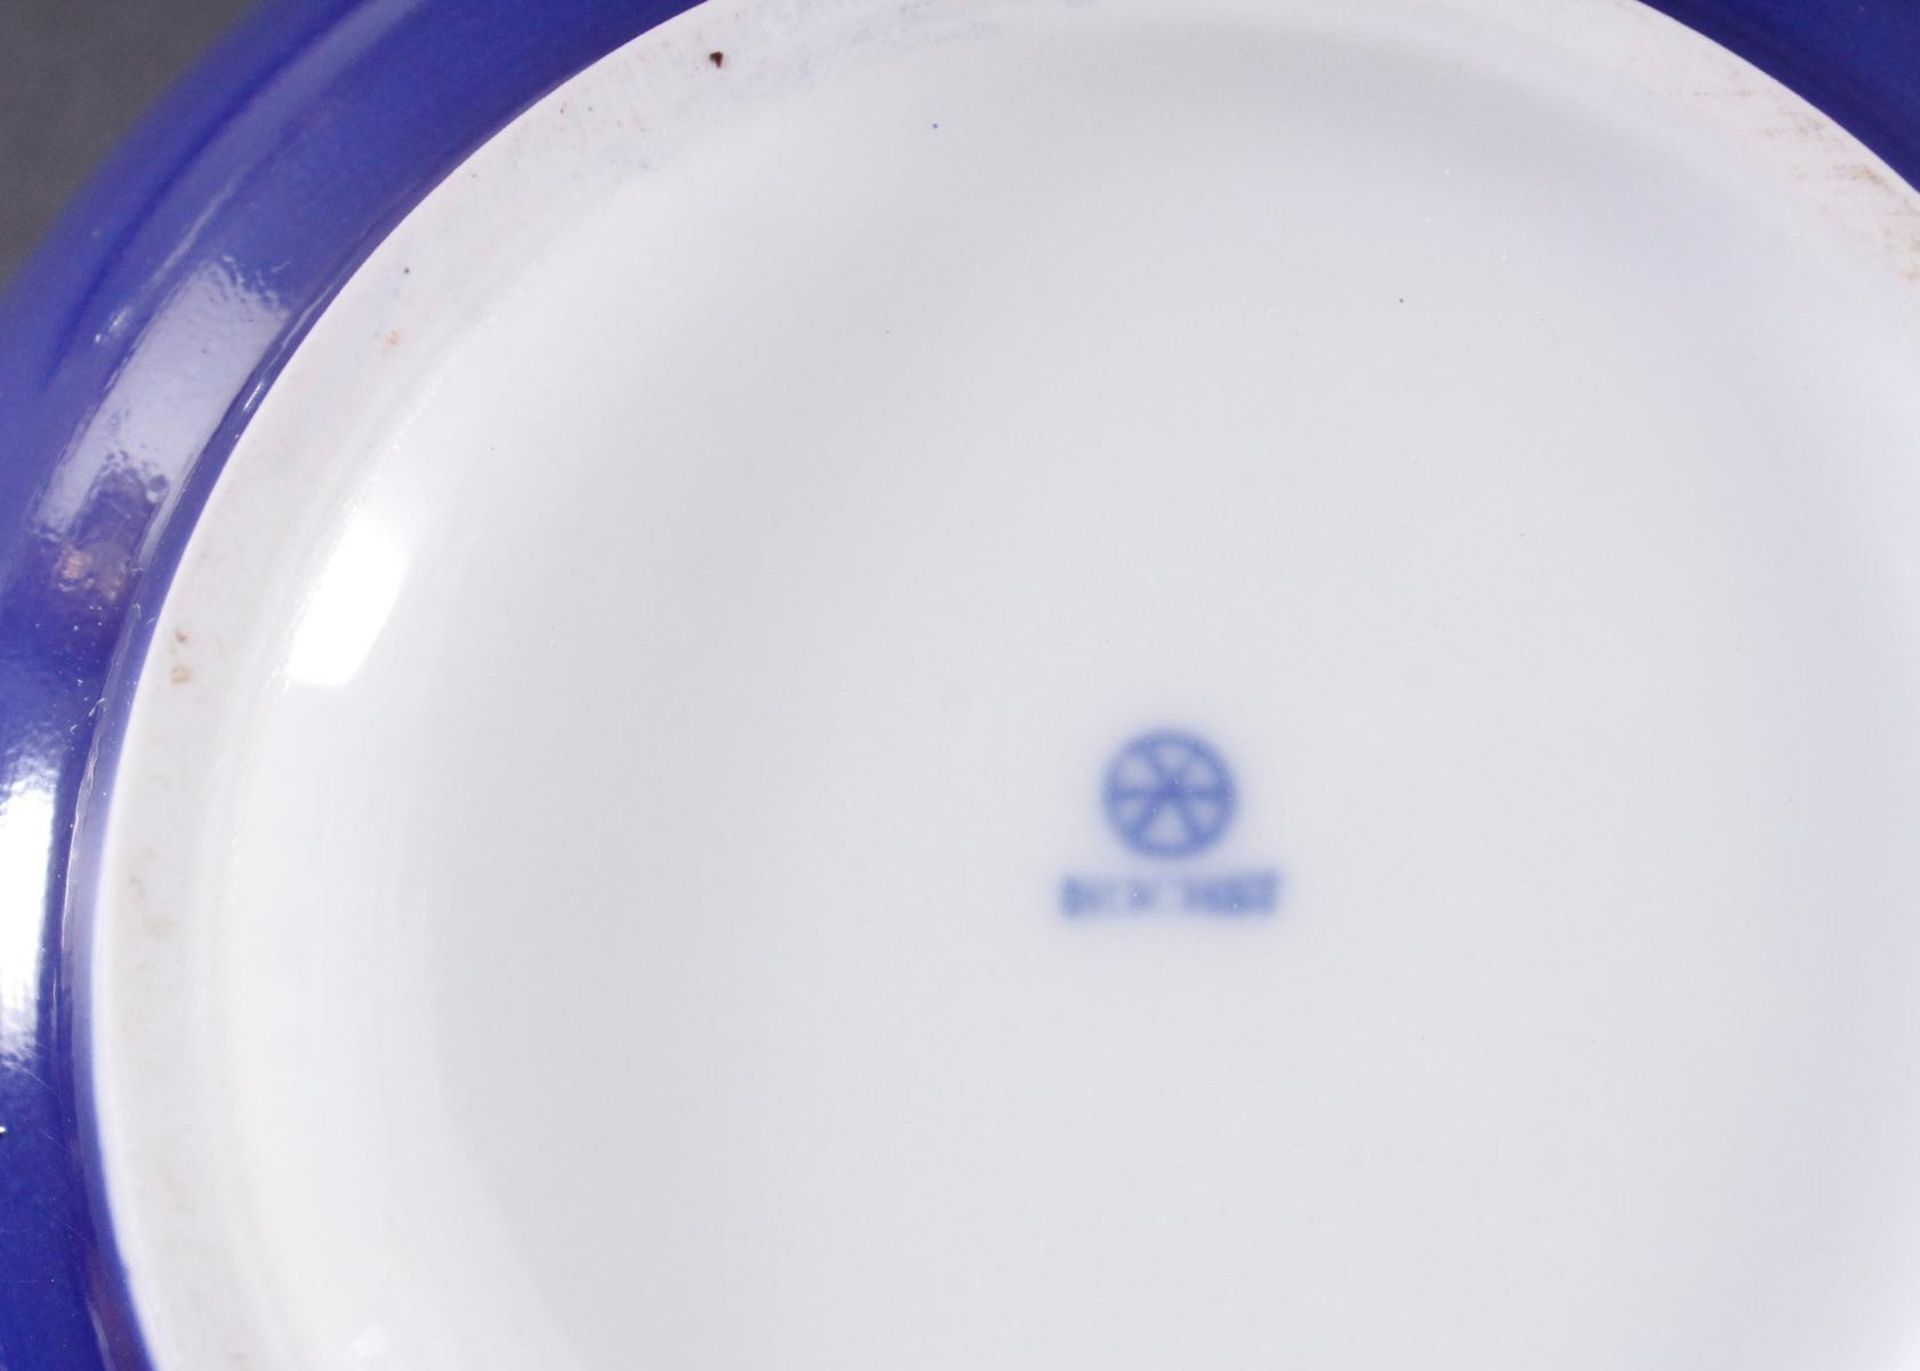 Deckeldose, HöchstRunde Form, Weißporzellan mit polychromer Bemalung, Goldrand, blaue Radmarke, - Image 3 of 3